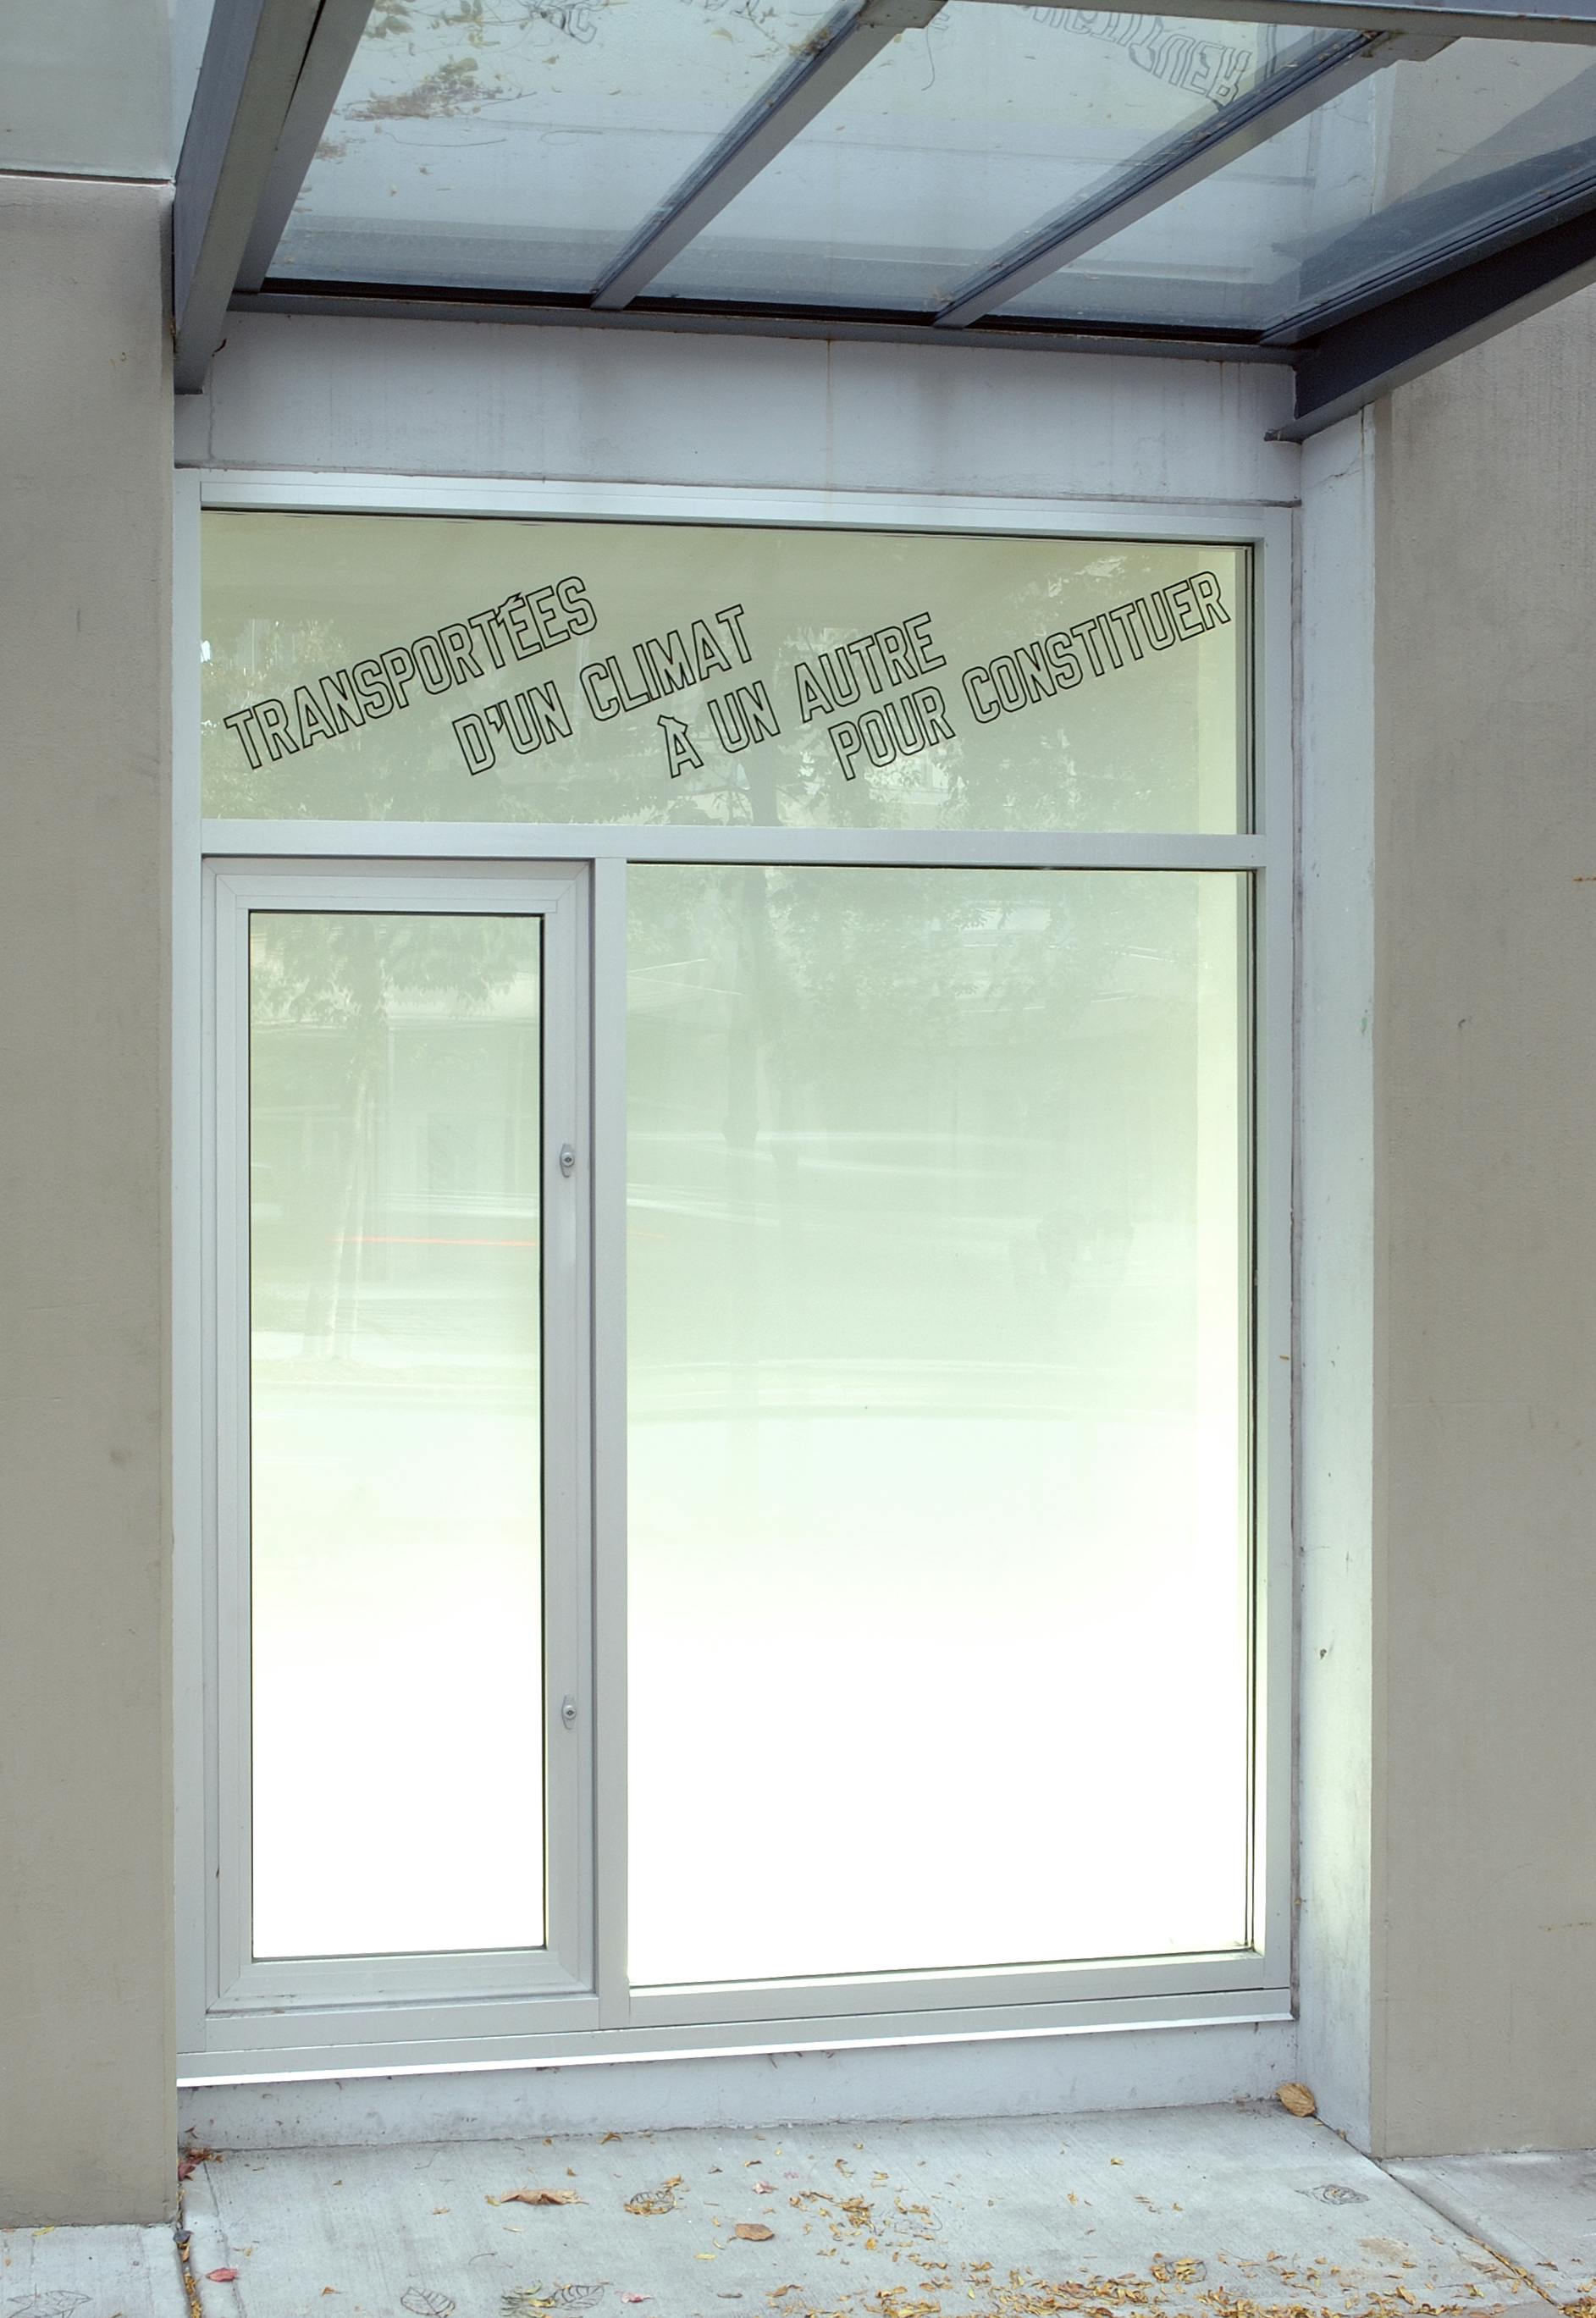 One of the windows on CAG’s facade displays a text-based artwork. It reads, “transportées d’un climat à un autre pour constituer” in upper letters.